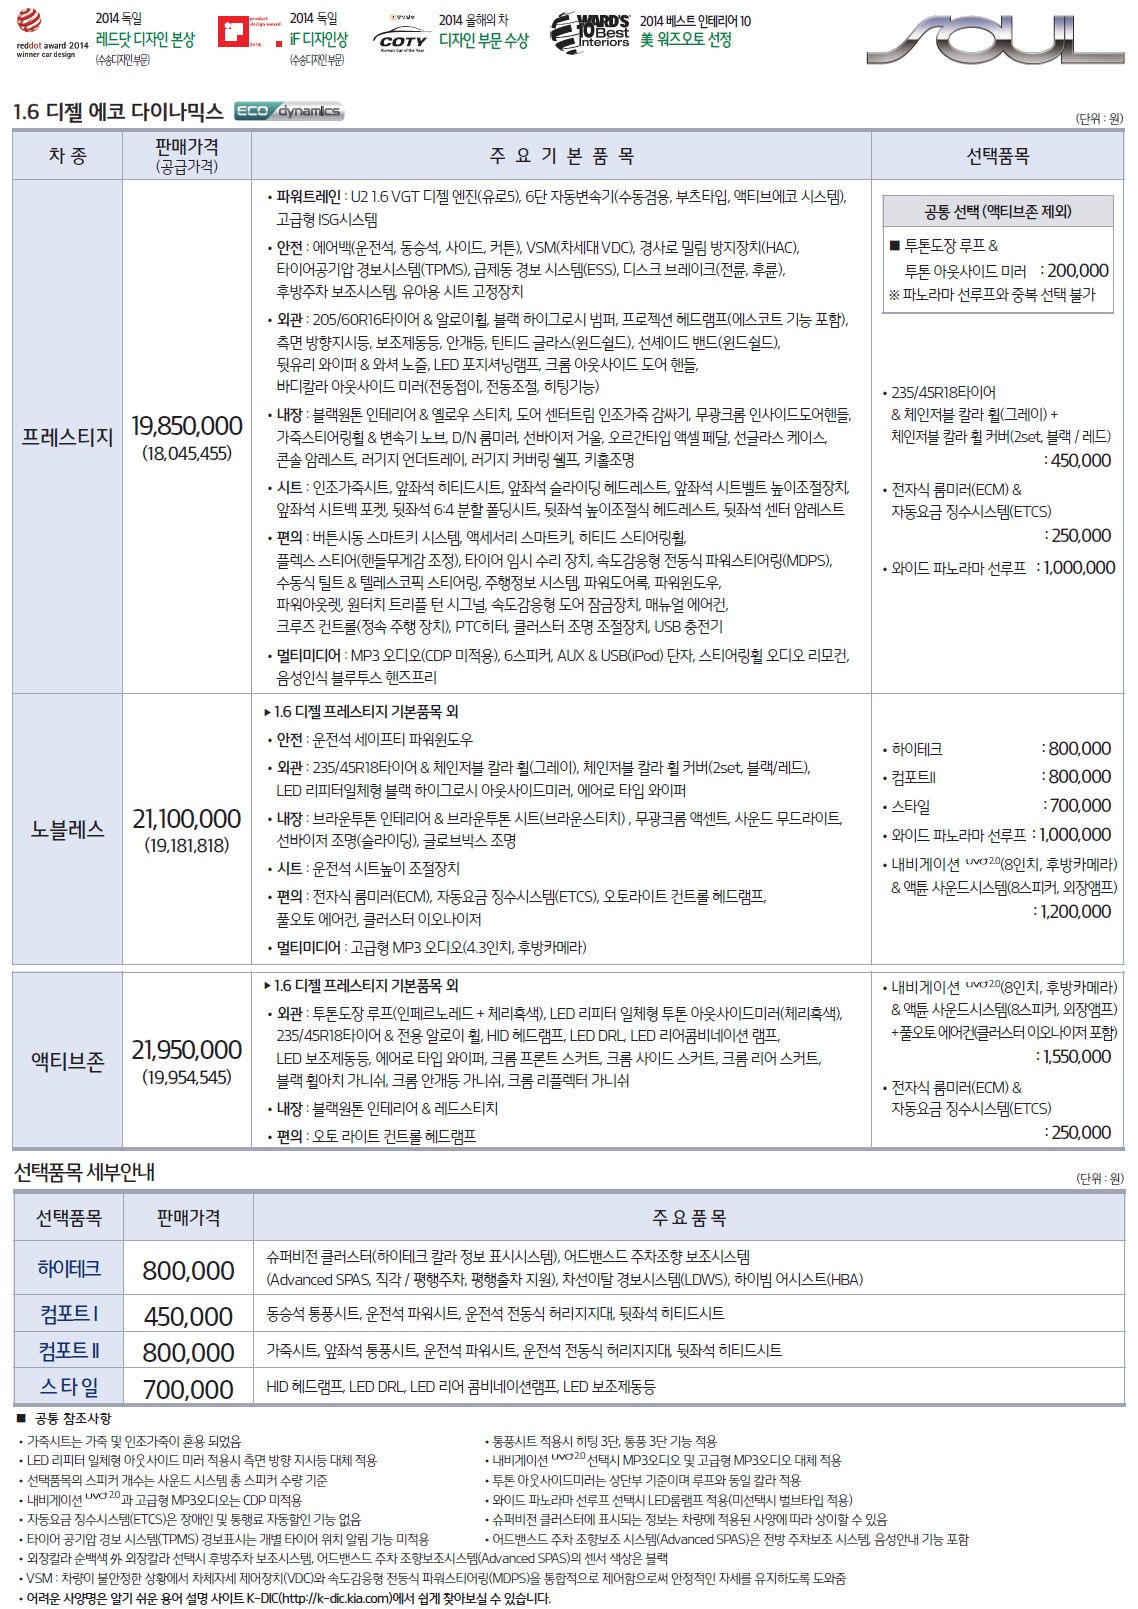 올뉴쏘울 가격표 - 2015년형 (2014년 07월) -2.jpg